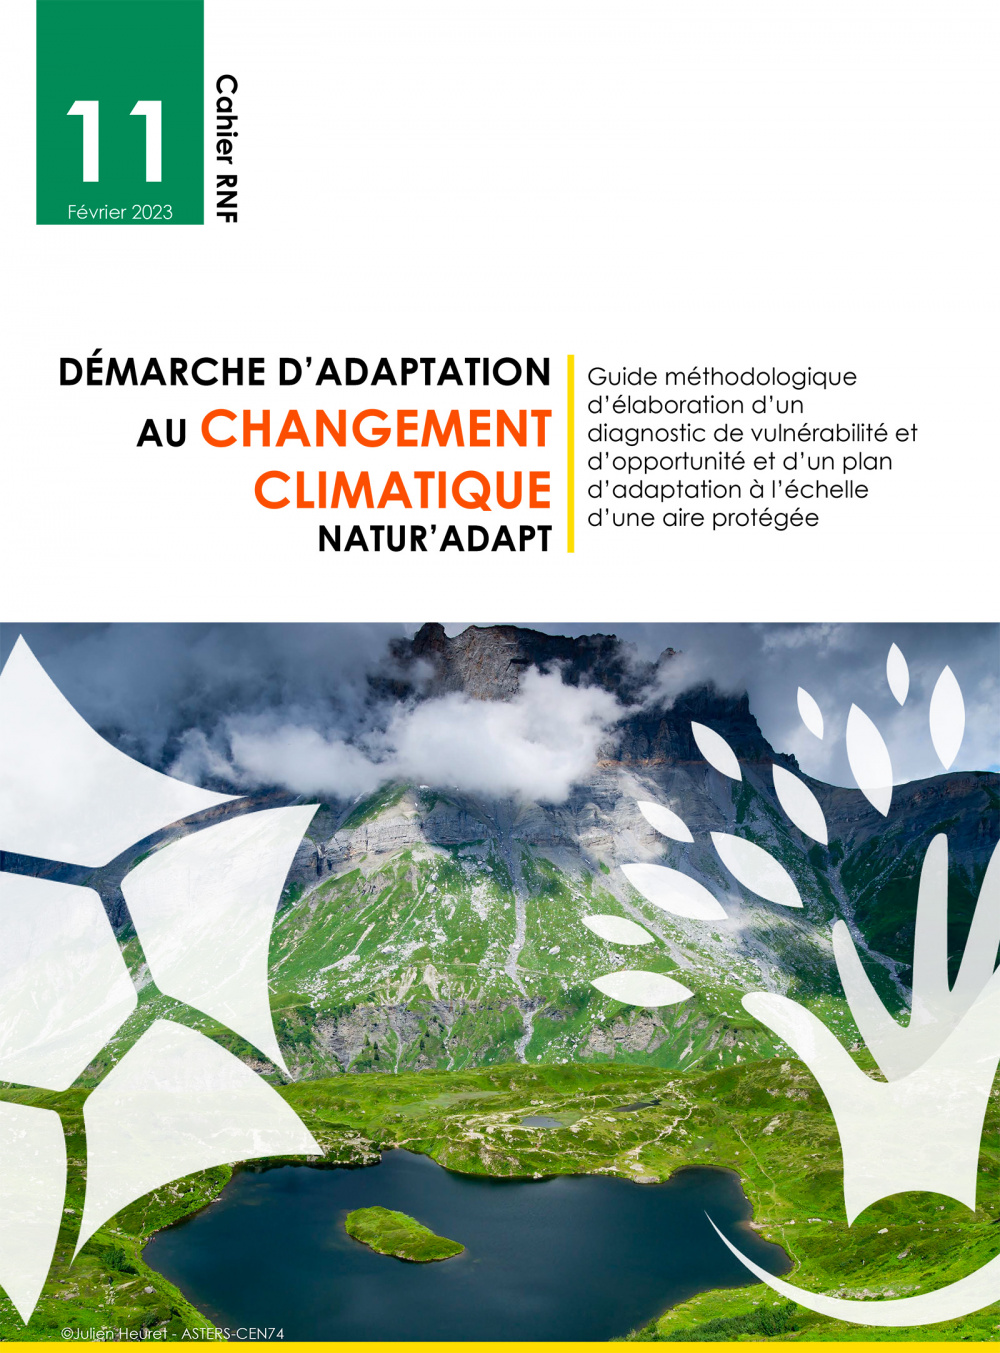 Démarche d’adaptation au changement climatique Natur’Adapt